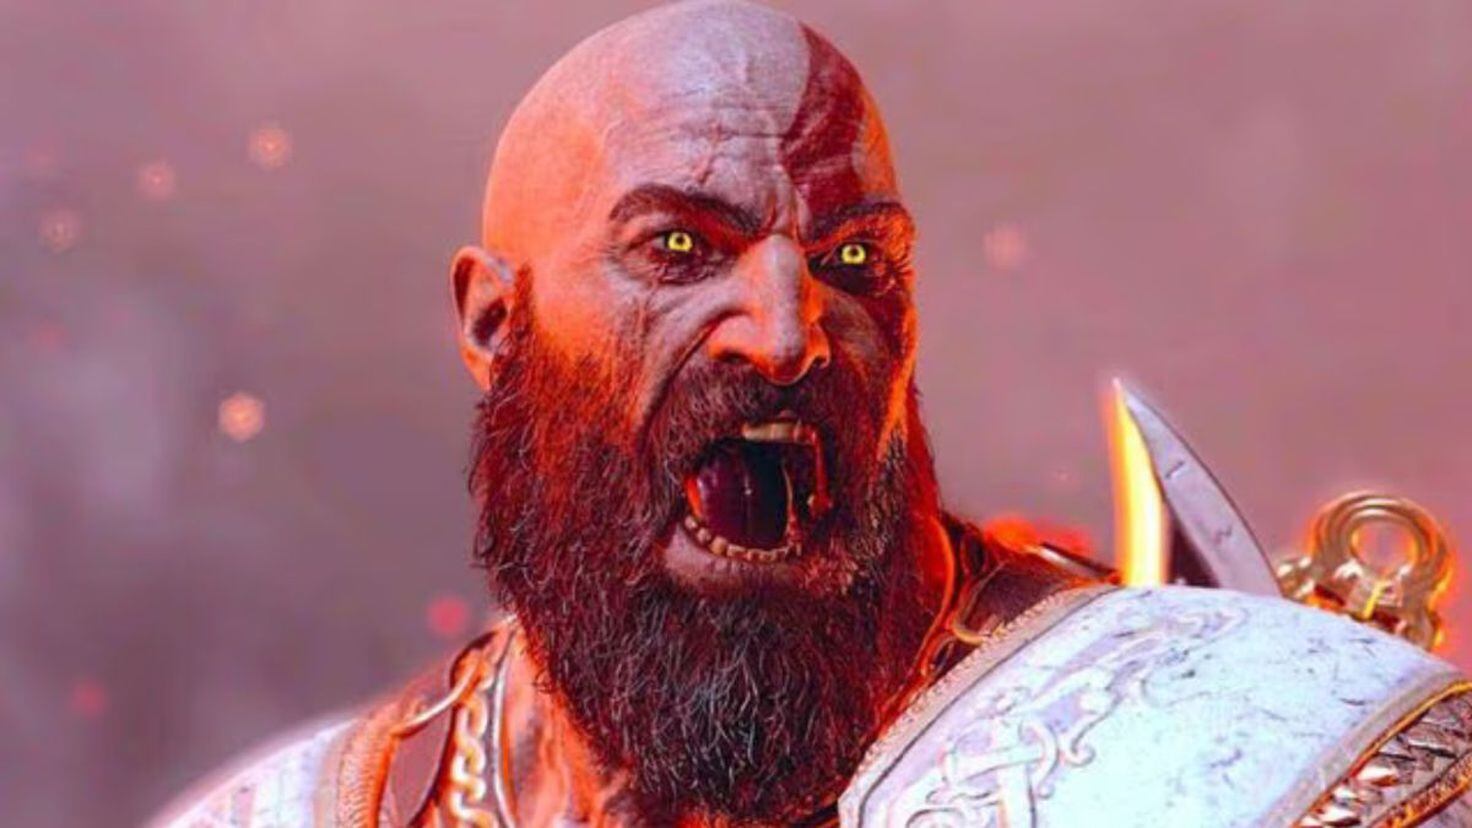 kratos god of war face